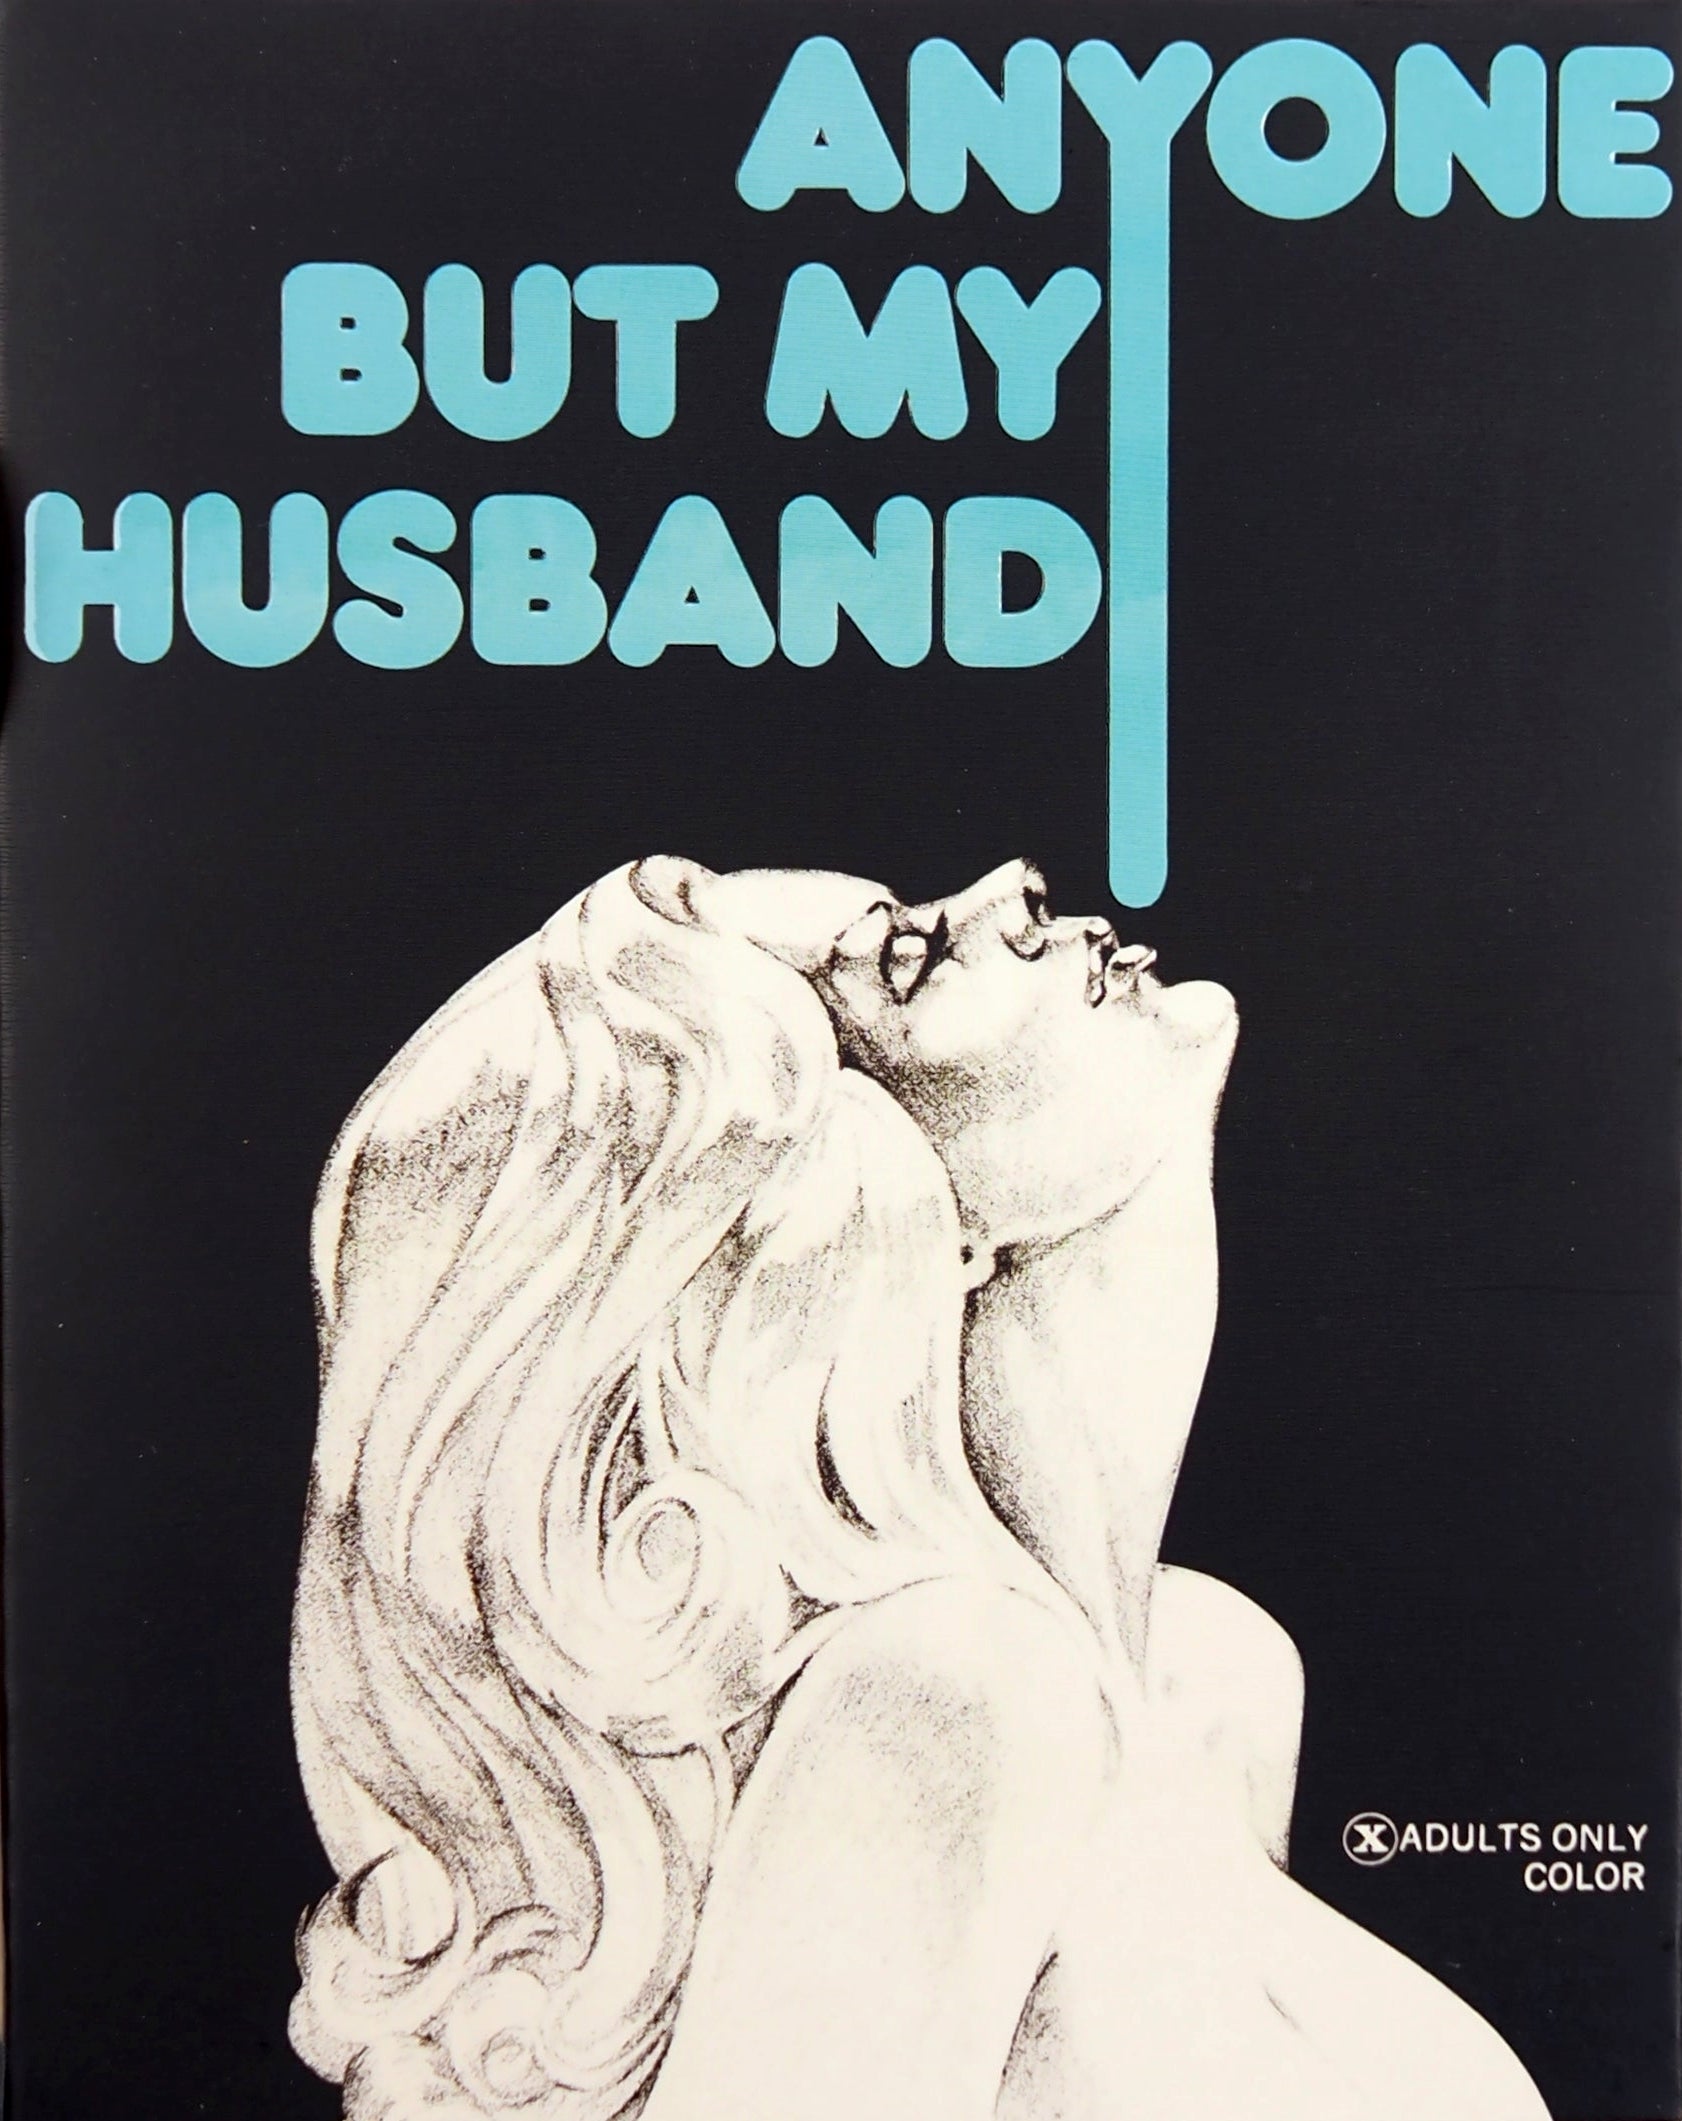 Anyone But My Husband / Sweet Punkin (Limited Edition) Blu-Ray Blu-Ray